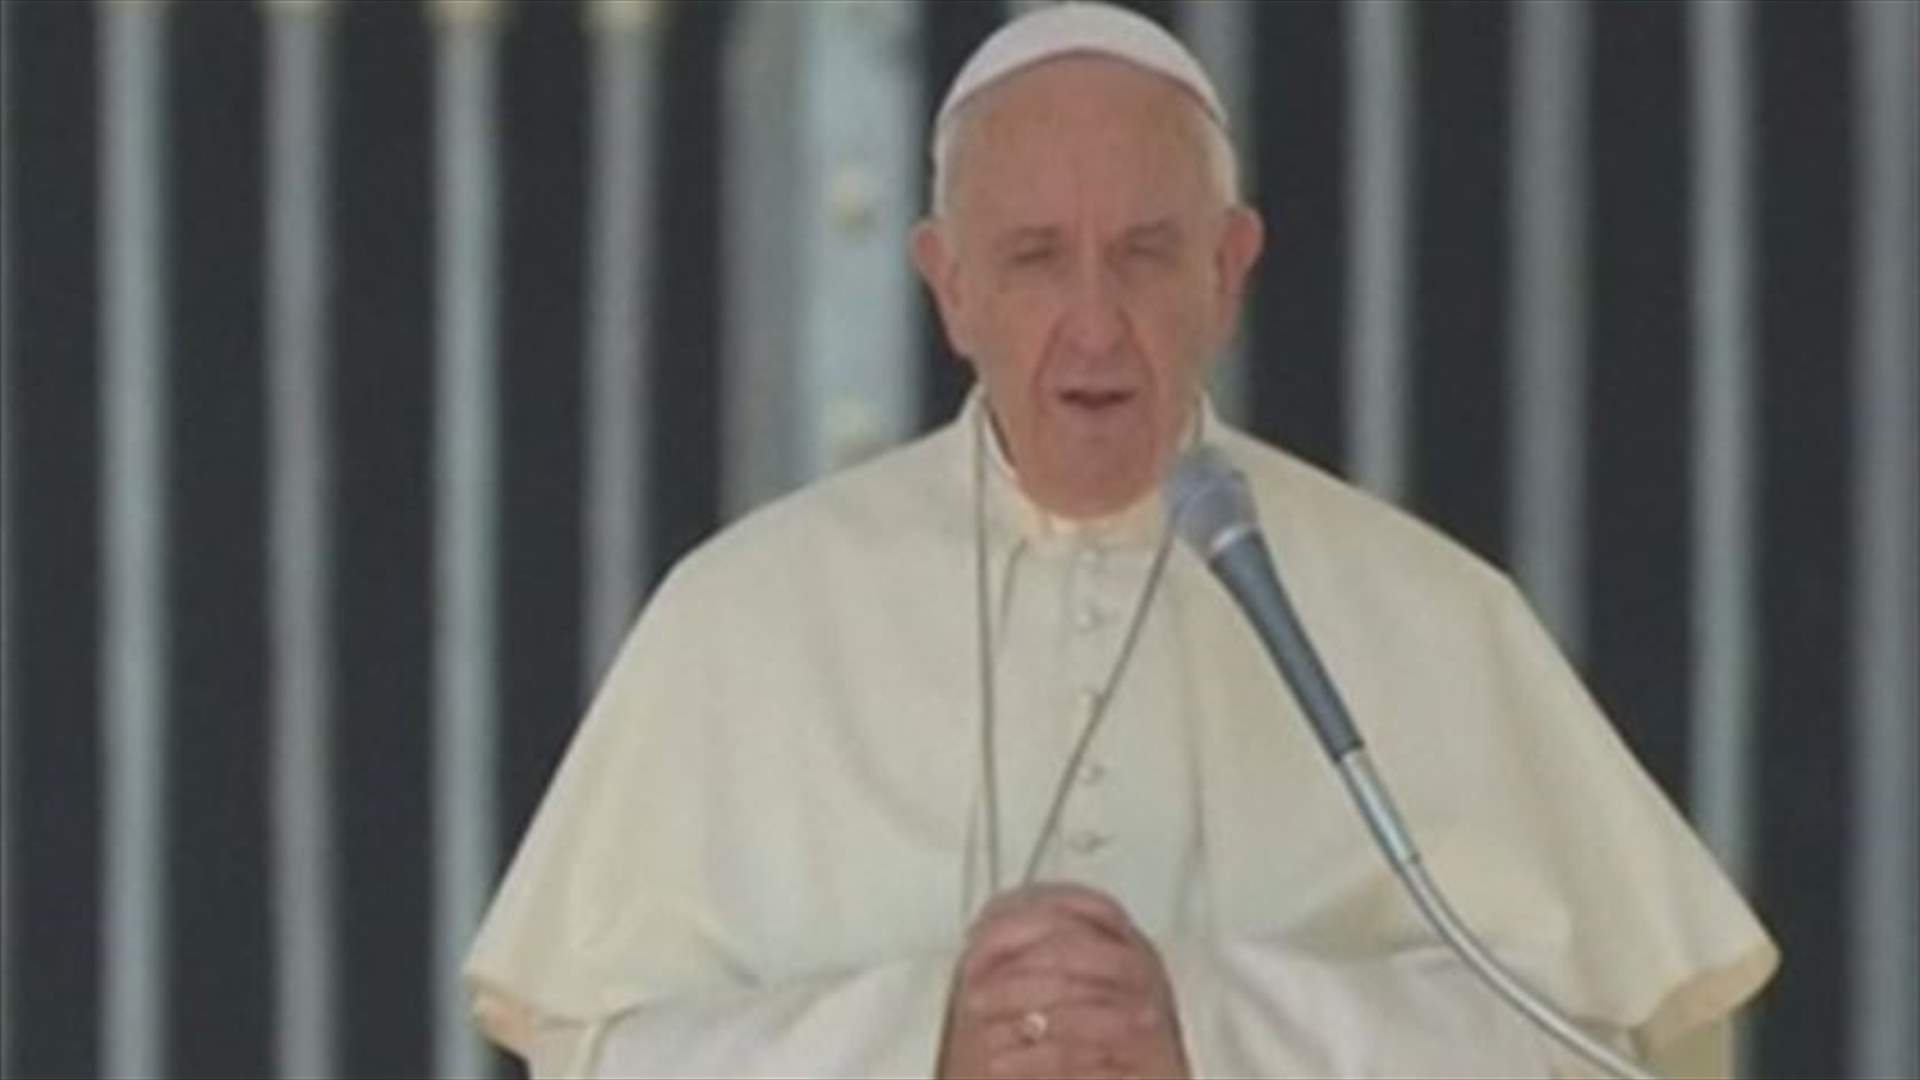 البابا فرنسيس يطلب المغفرة للكاثوليك التائبين الذين اجهضوا